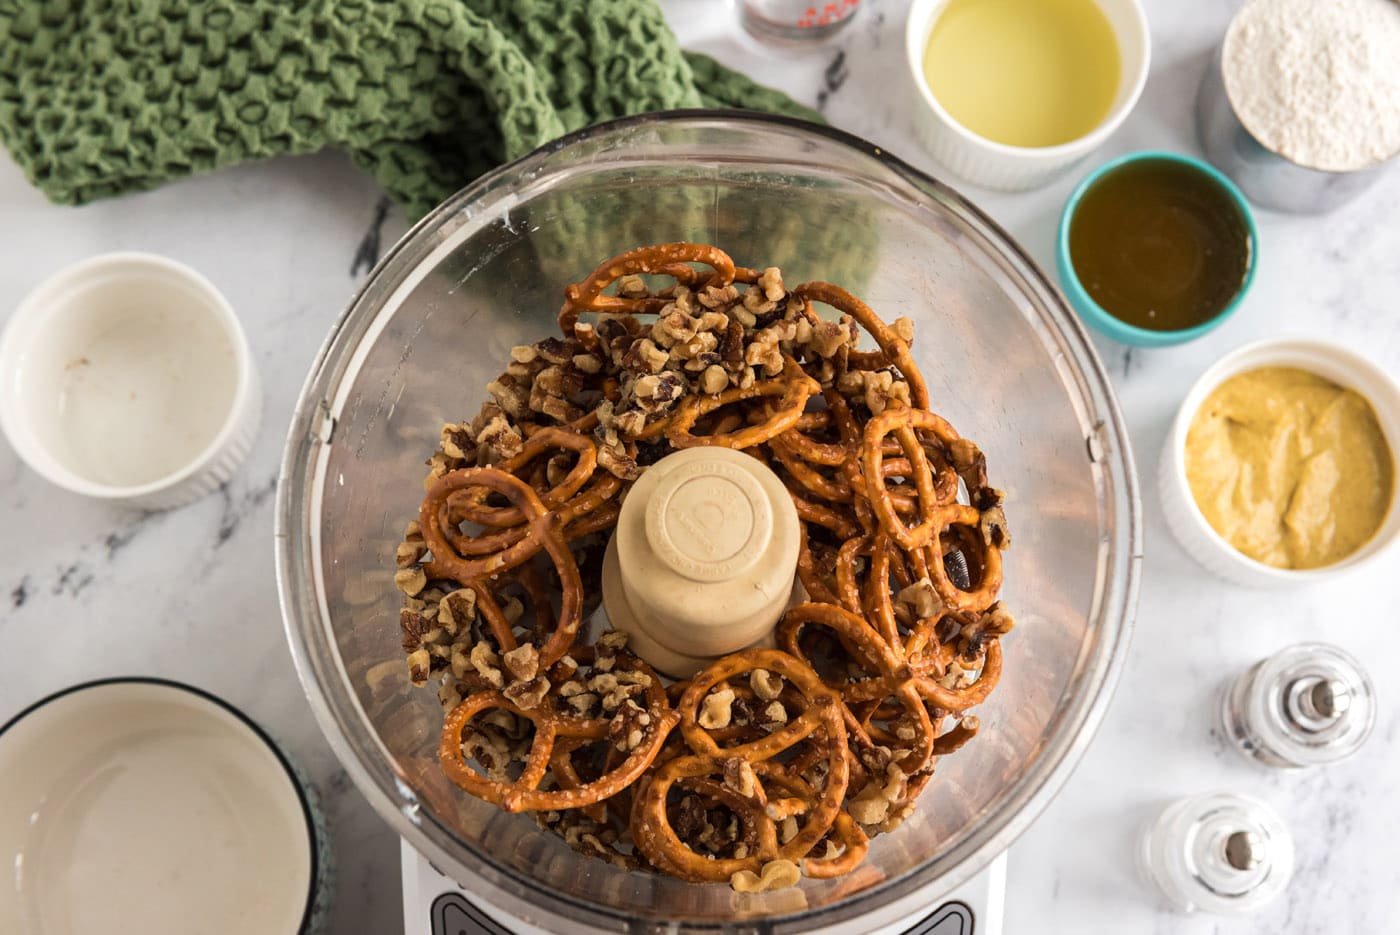 pretzels and walnuts in a food processor bowl